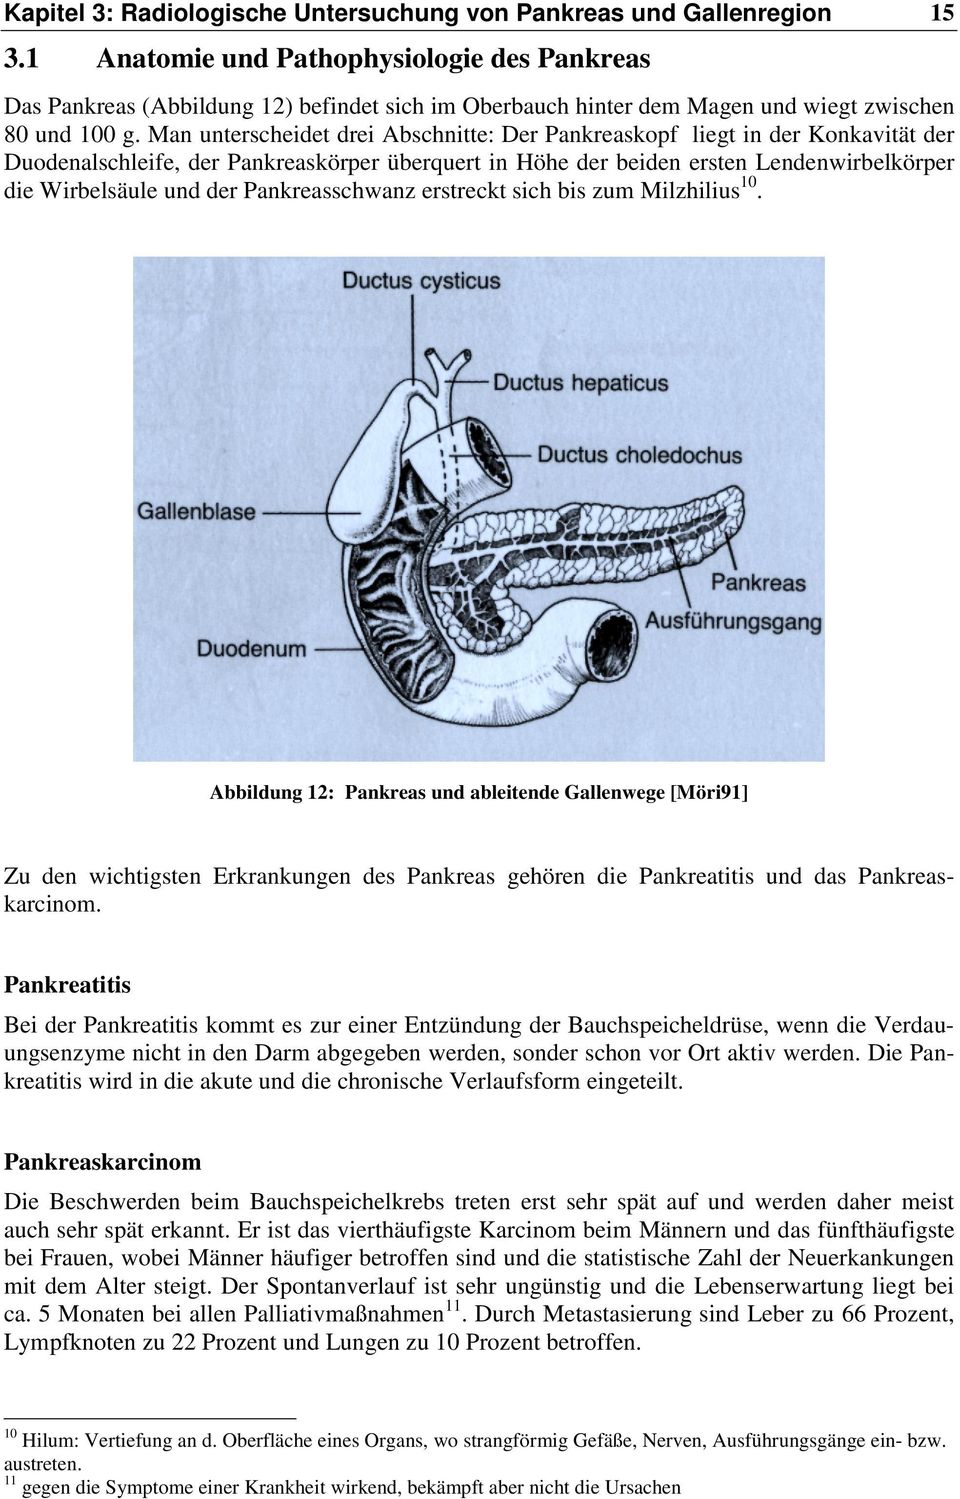 Man unterscheidet drei Abschnitte: Der Pankreaskopf liegt in der Konkavität der Duodenalschleife, der Pankreaskörper überquert in Höhe der beiden ersten Lendenwirbelkörper die Wirbelsäule und der